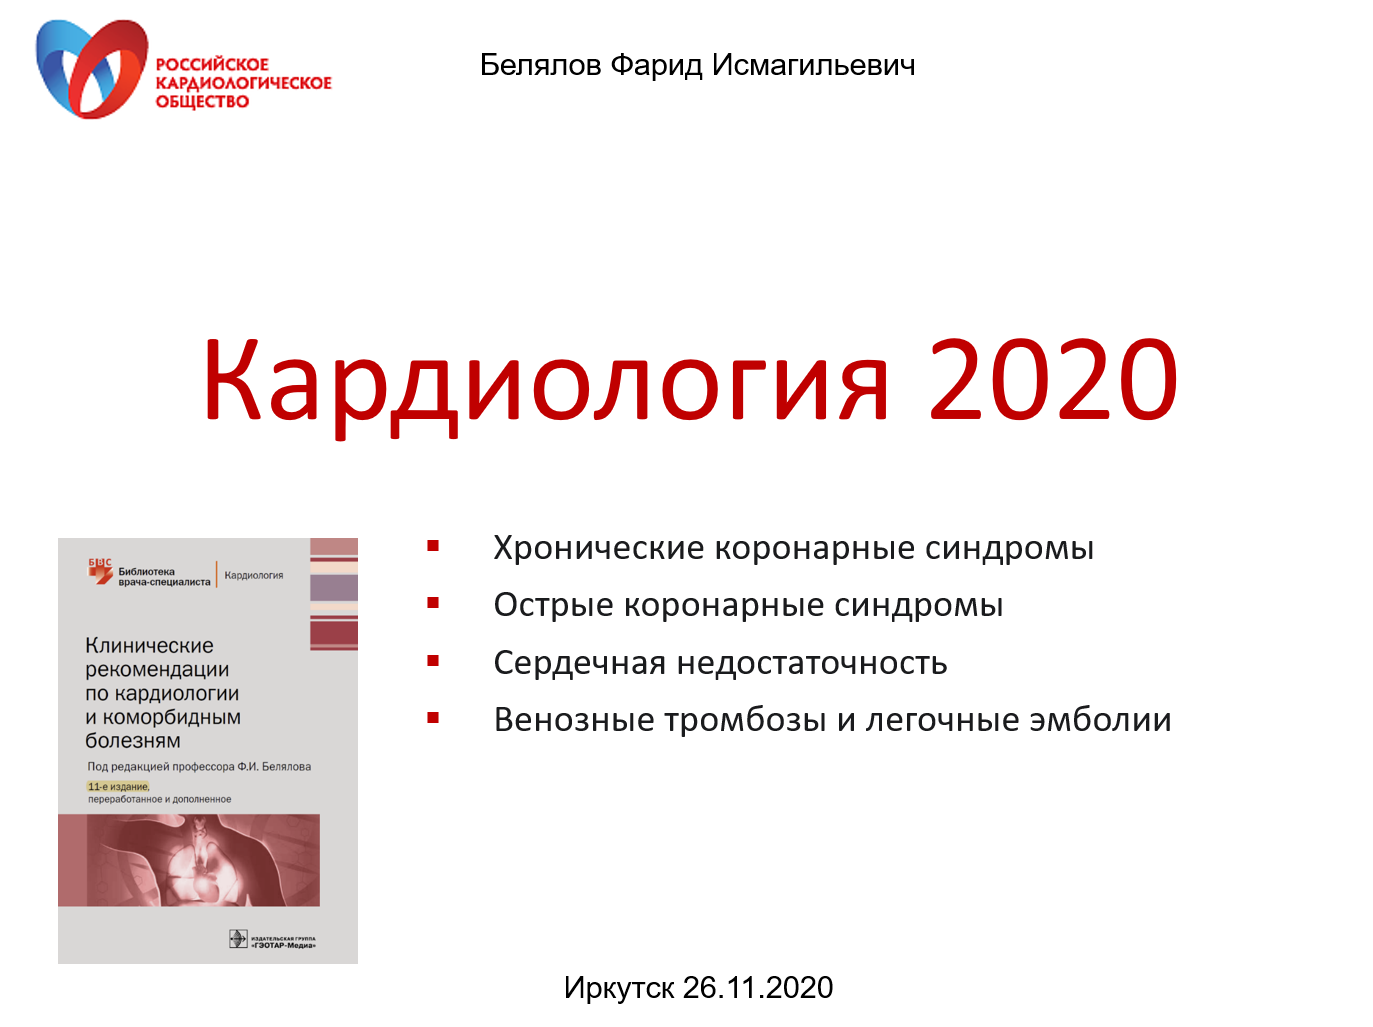 Кардиология 2020. Иркутск, 26.11.2020